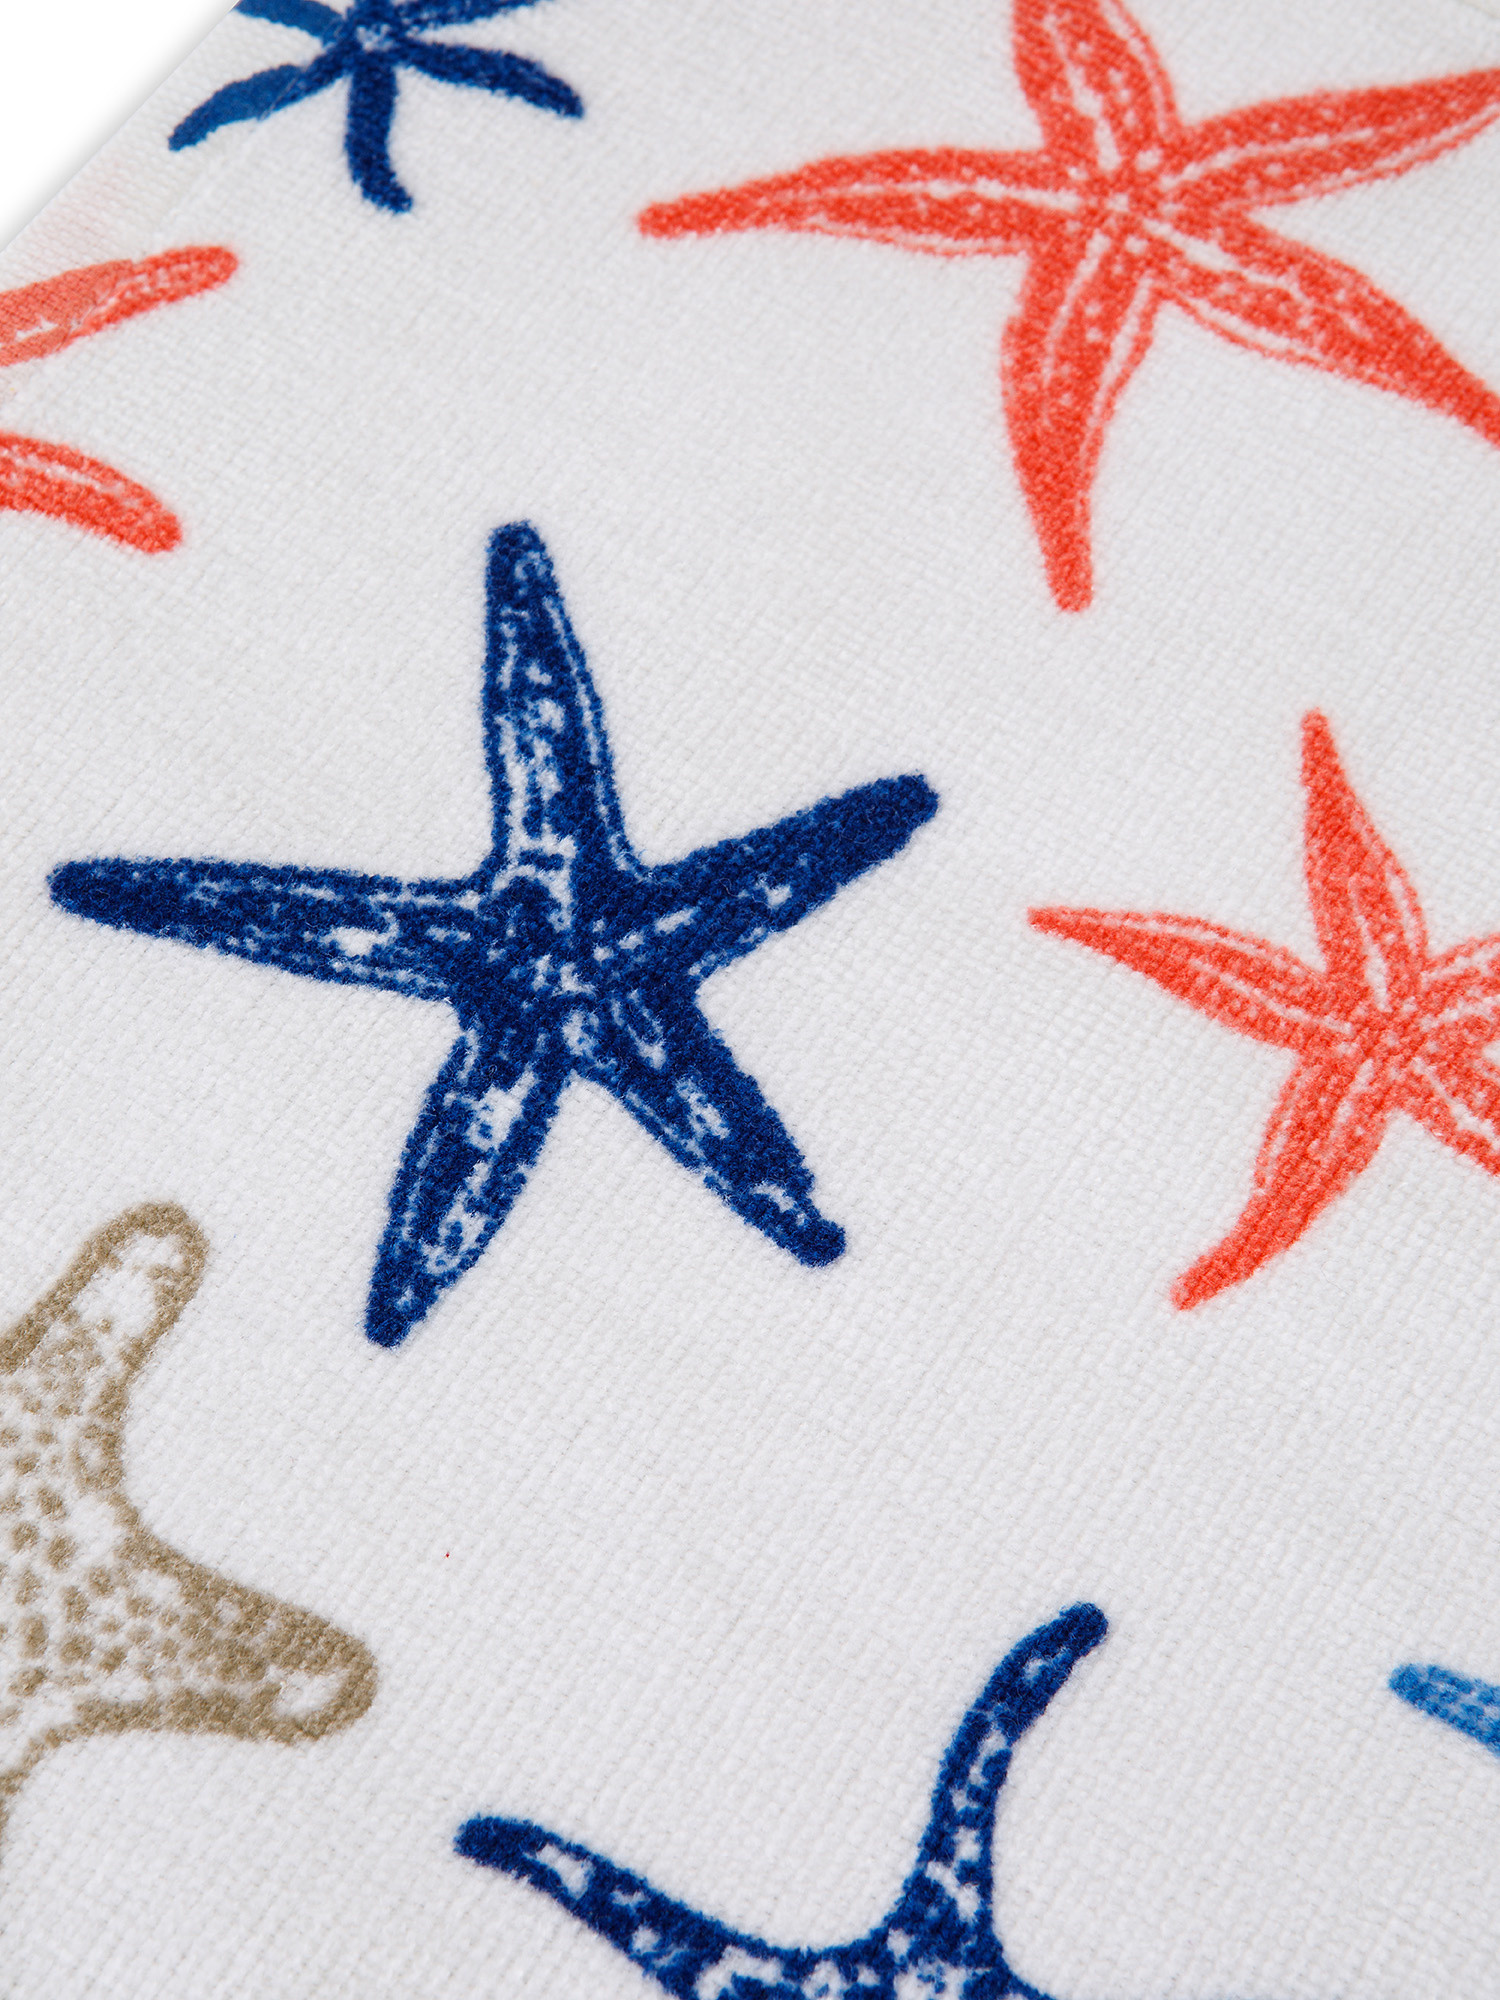 Asciugamano cotone velour motivo stelle marine, Bianco, large image number 2